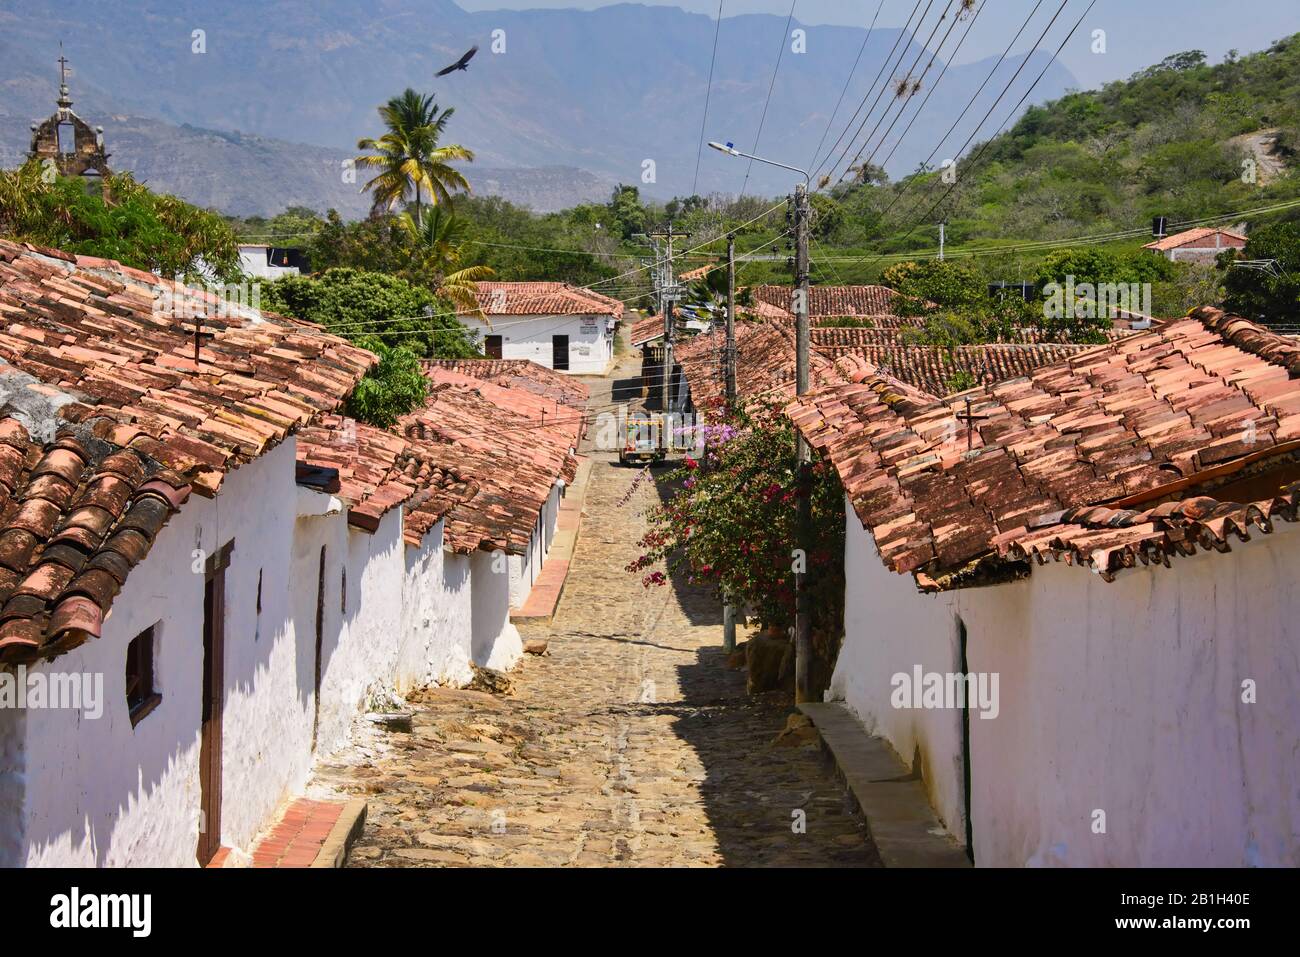 Tetti di tegole rosse e strade acciottolate, Guane, Santander, Colombia Foto Stock